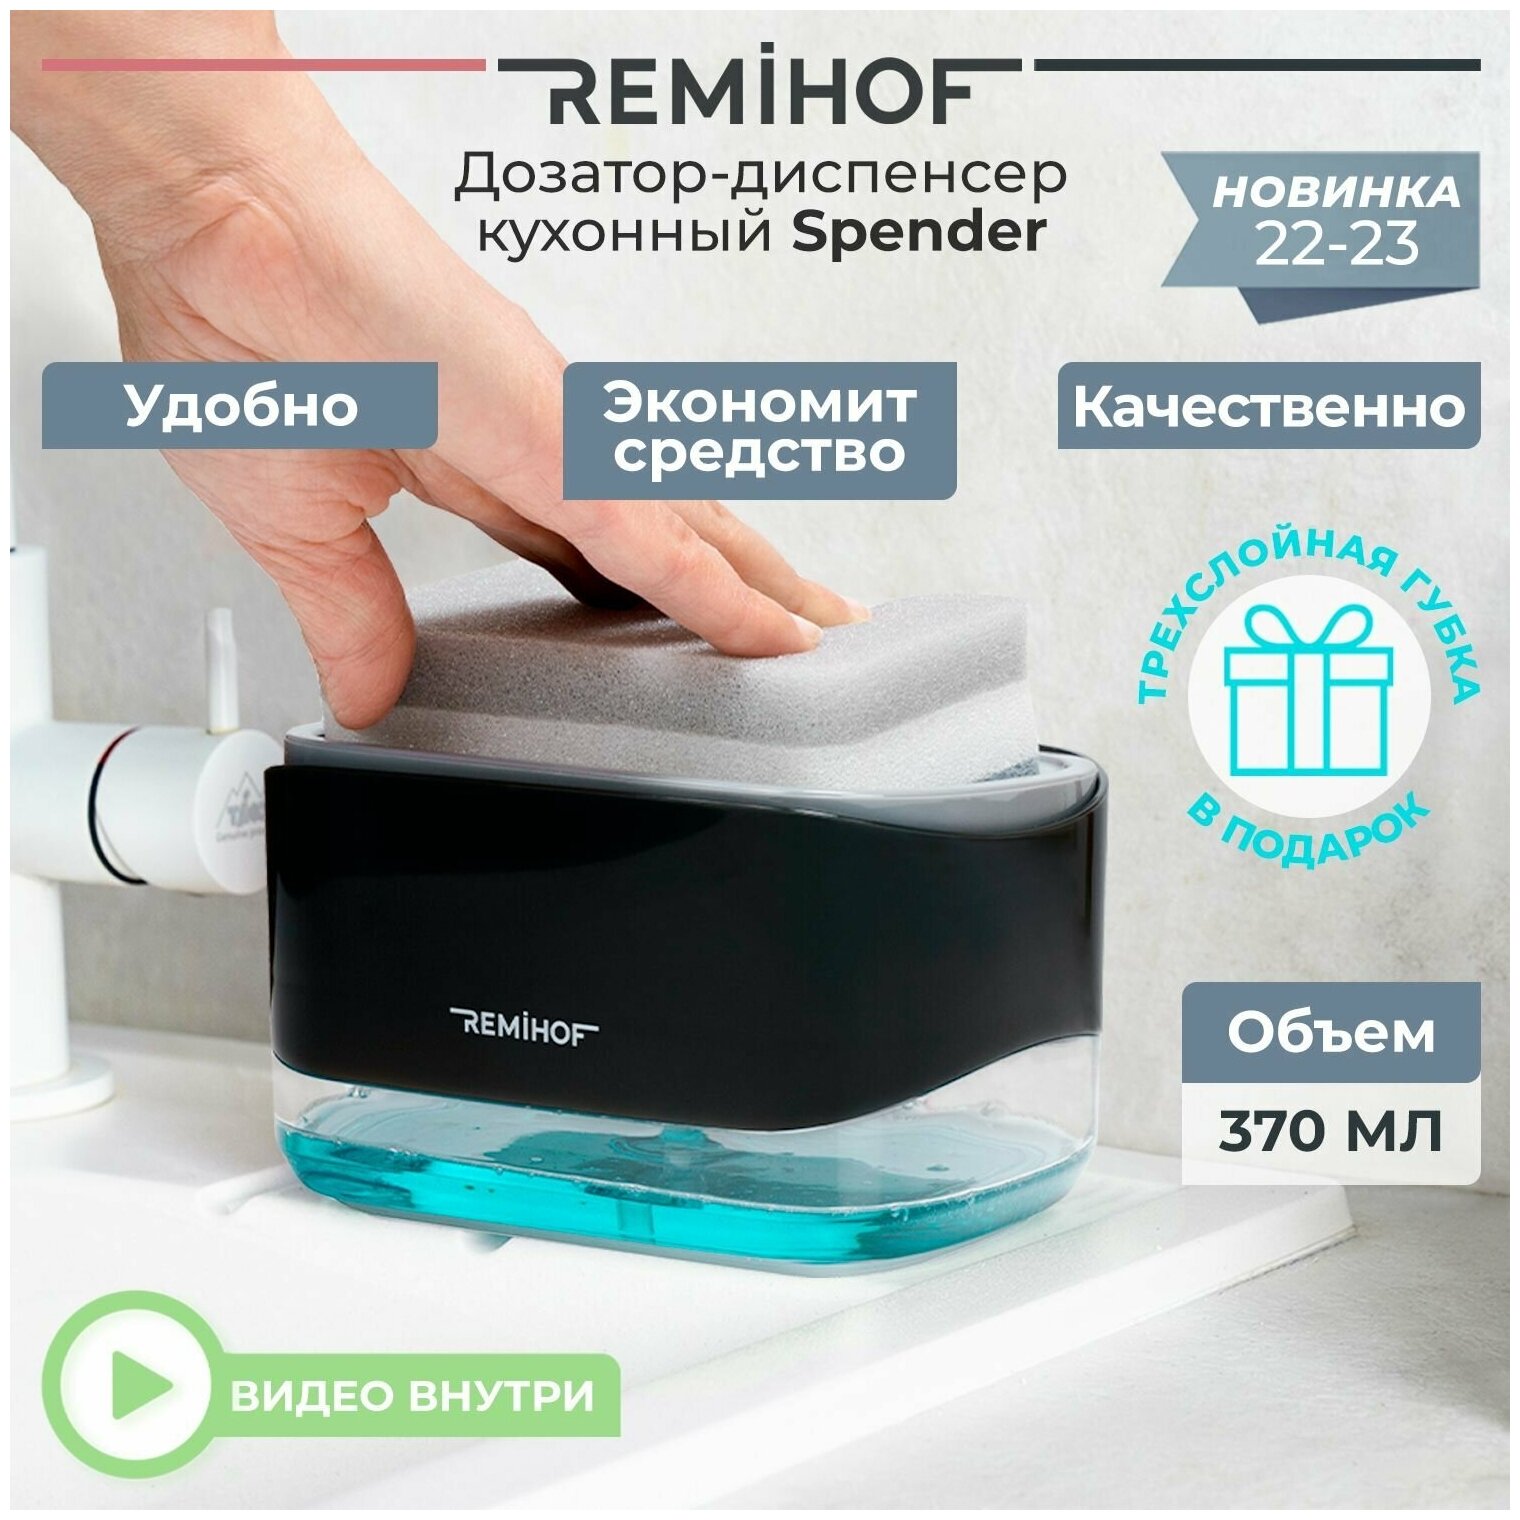 REMIHOF/Spender - Набор дозатор-диспенсер кухонный и губка/ Дозатор для мыла и моющих средств